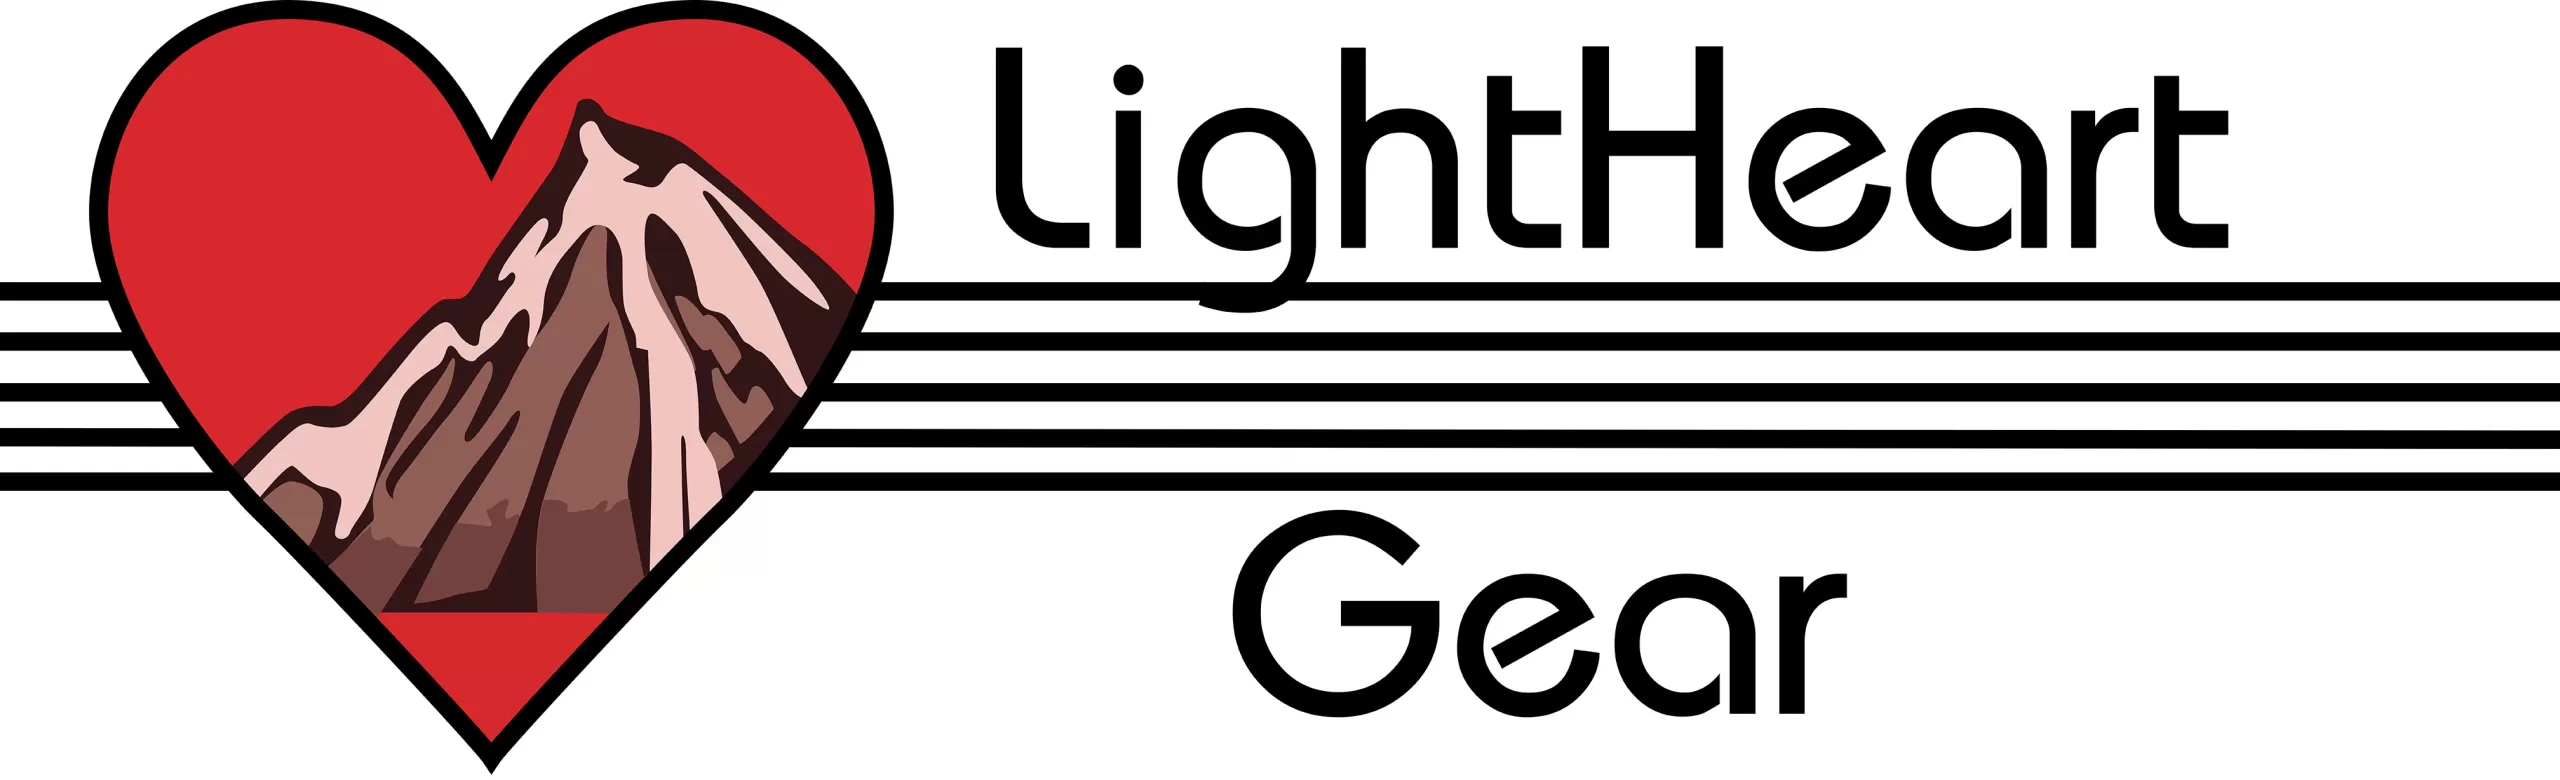 LHG logo